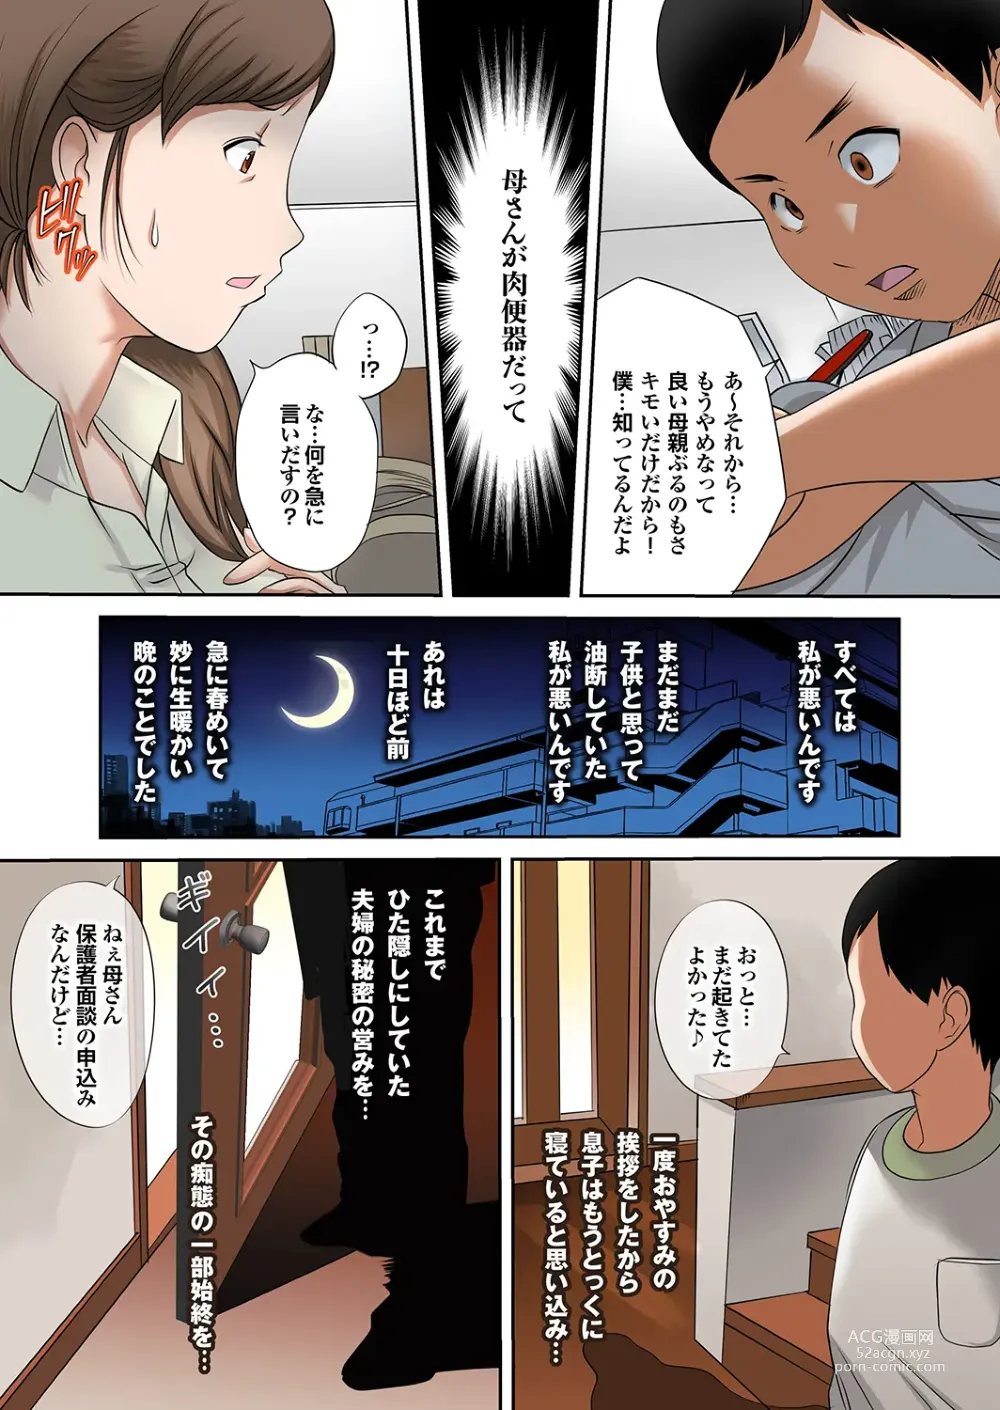 Page 8 of manga Boku no Kaa-san no Nikudorei-ka ga Tomaranai.